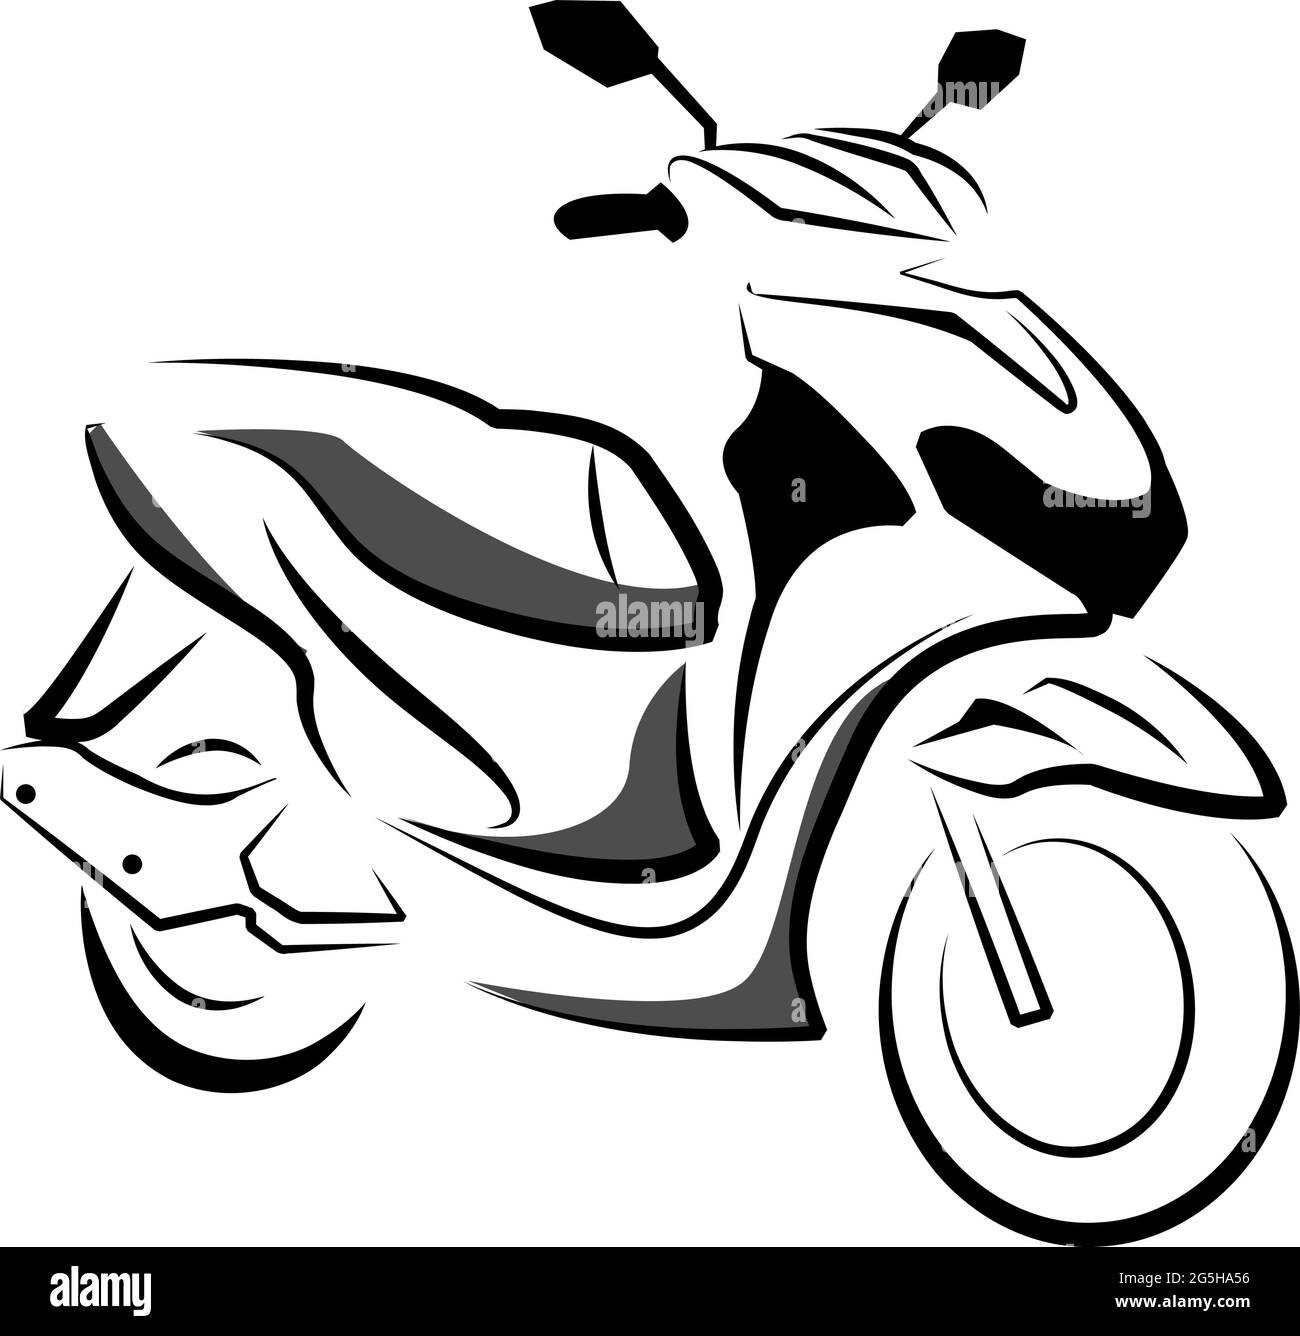 Design motorcycle immagini e fotografie stock ad alta risoluzione - Alamy